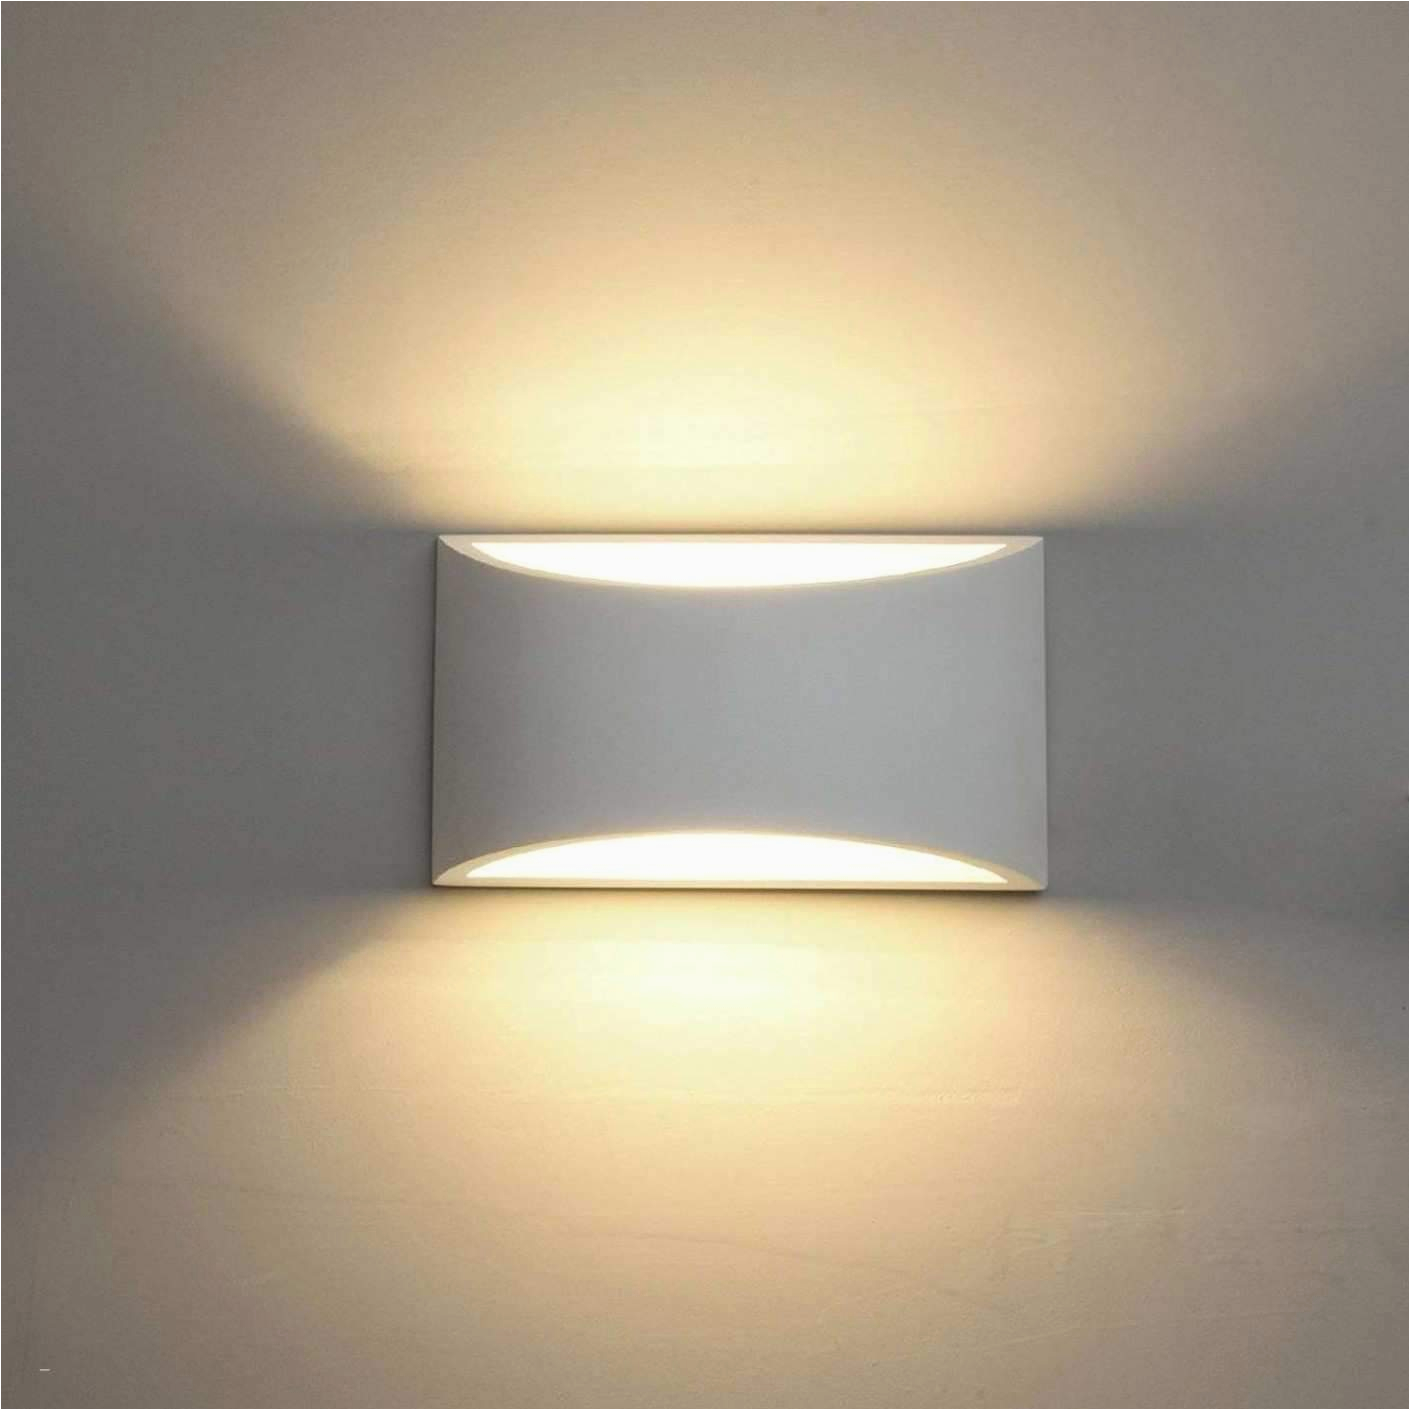 lampen wohnzimmer design neu deckenlampe schlafzimmer 0d archives design von led lampen of lampen wohnzimmer design